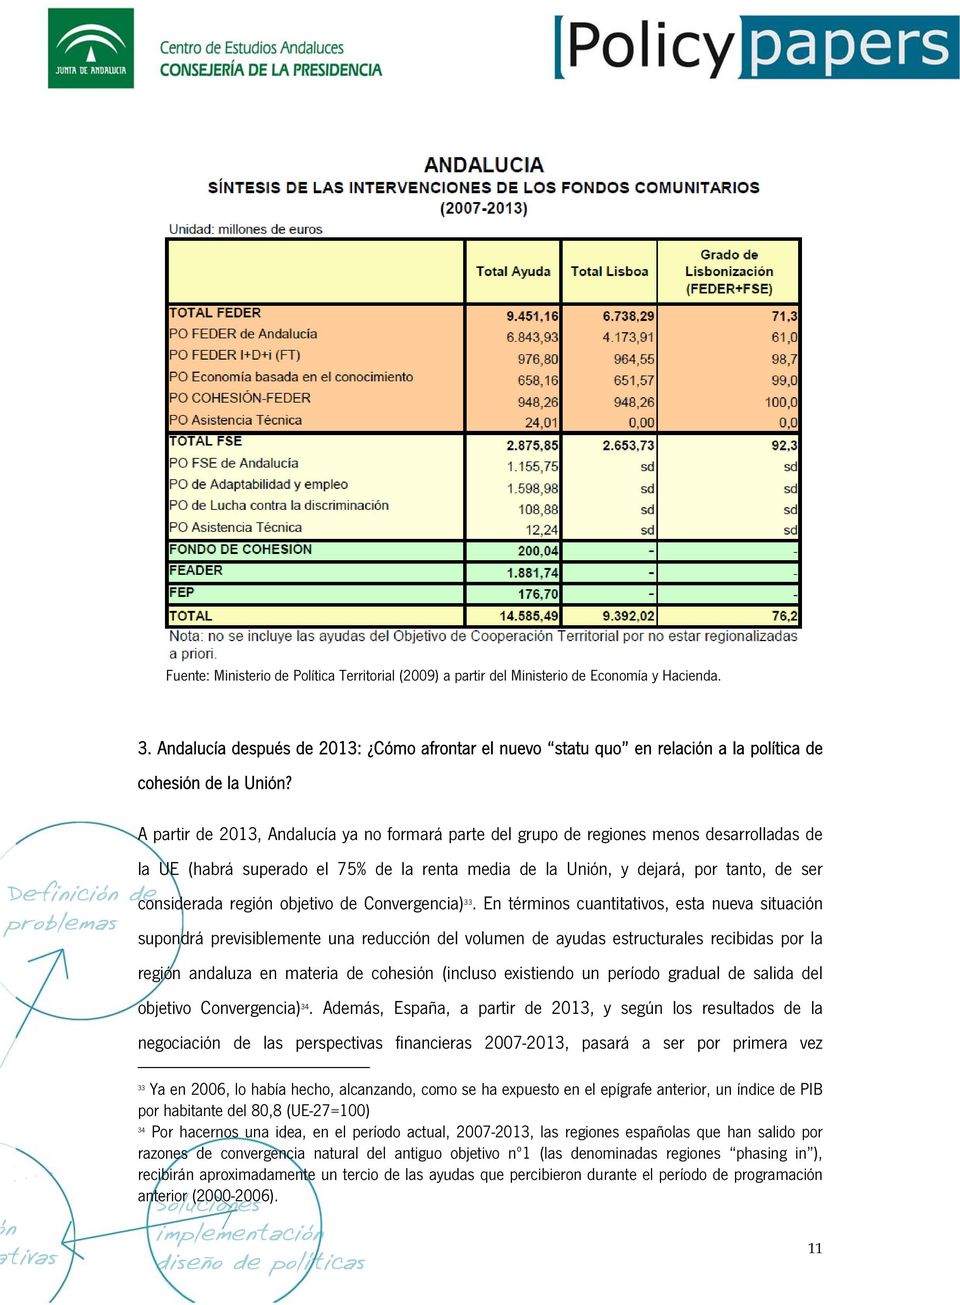 A partir de 2013, Andalucía ya no formará parte del grupo de regiones menos desarrolladas de la UE (habrá superado el 75% de la renta media de la Unión, y dejará, por tanto, de ser considerada región